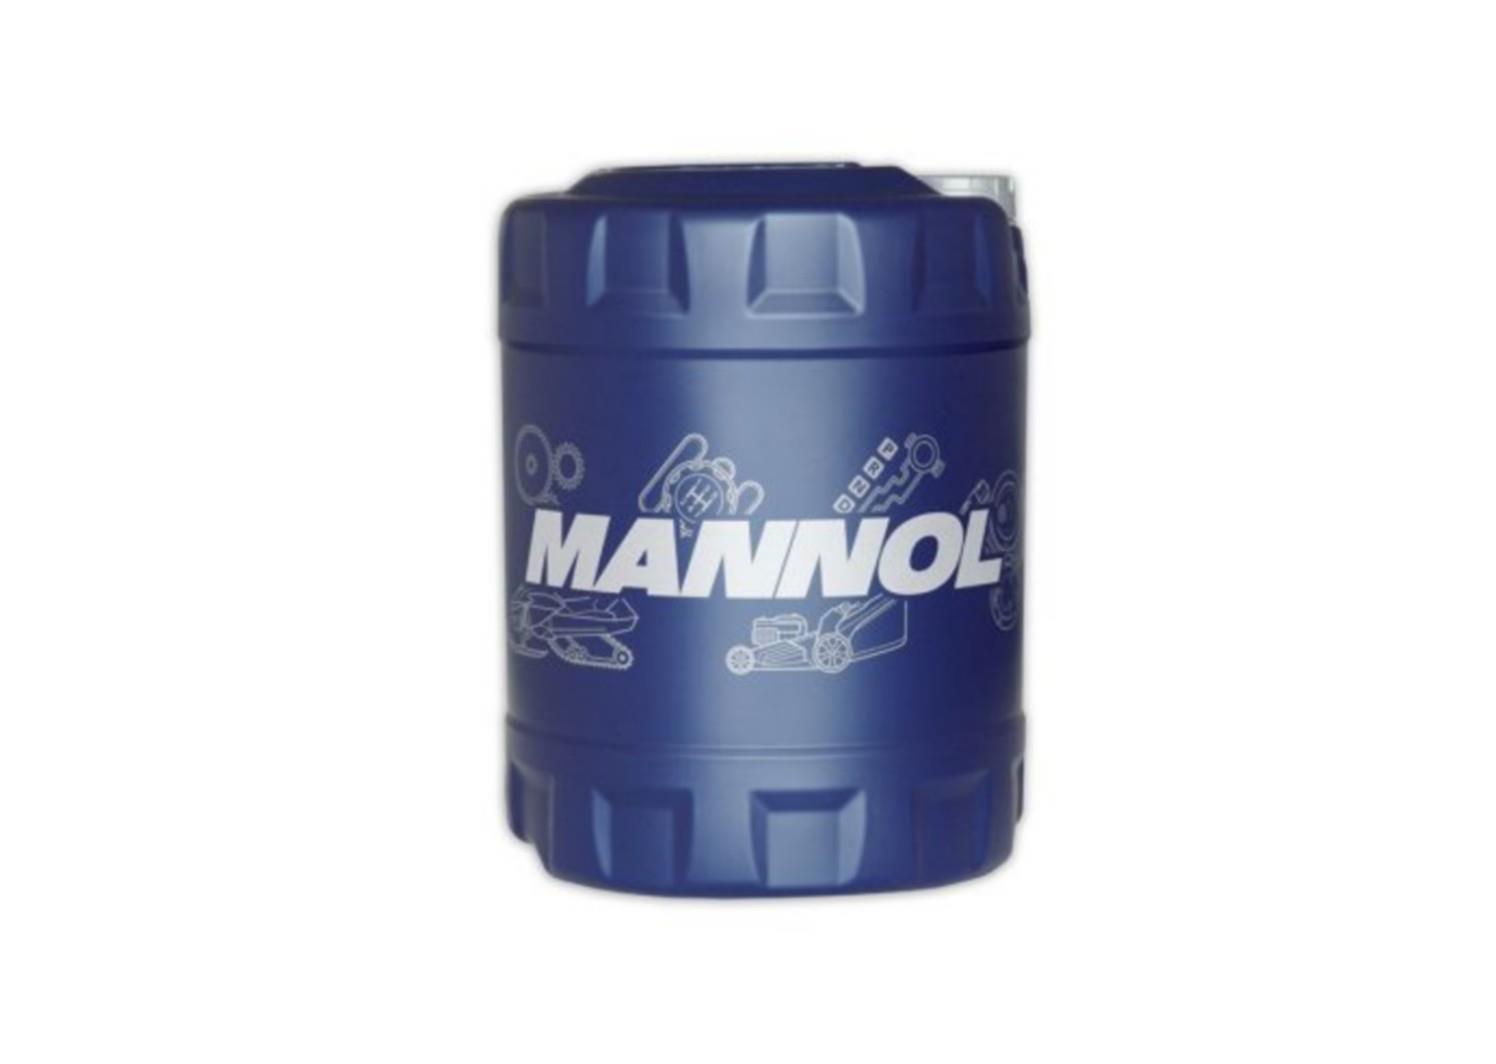 Mannol MN Tracteur Superoil 15W-40 10 L